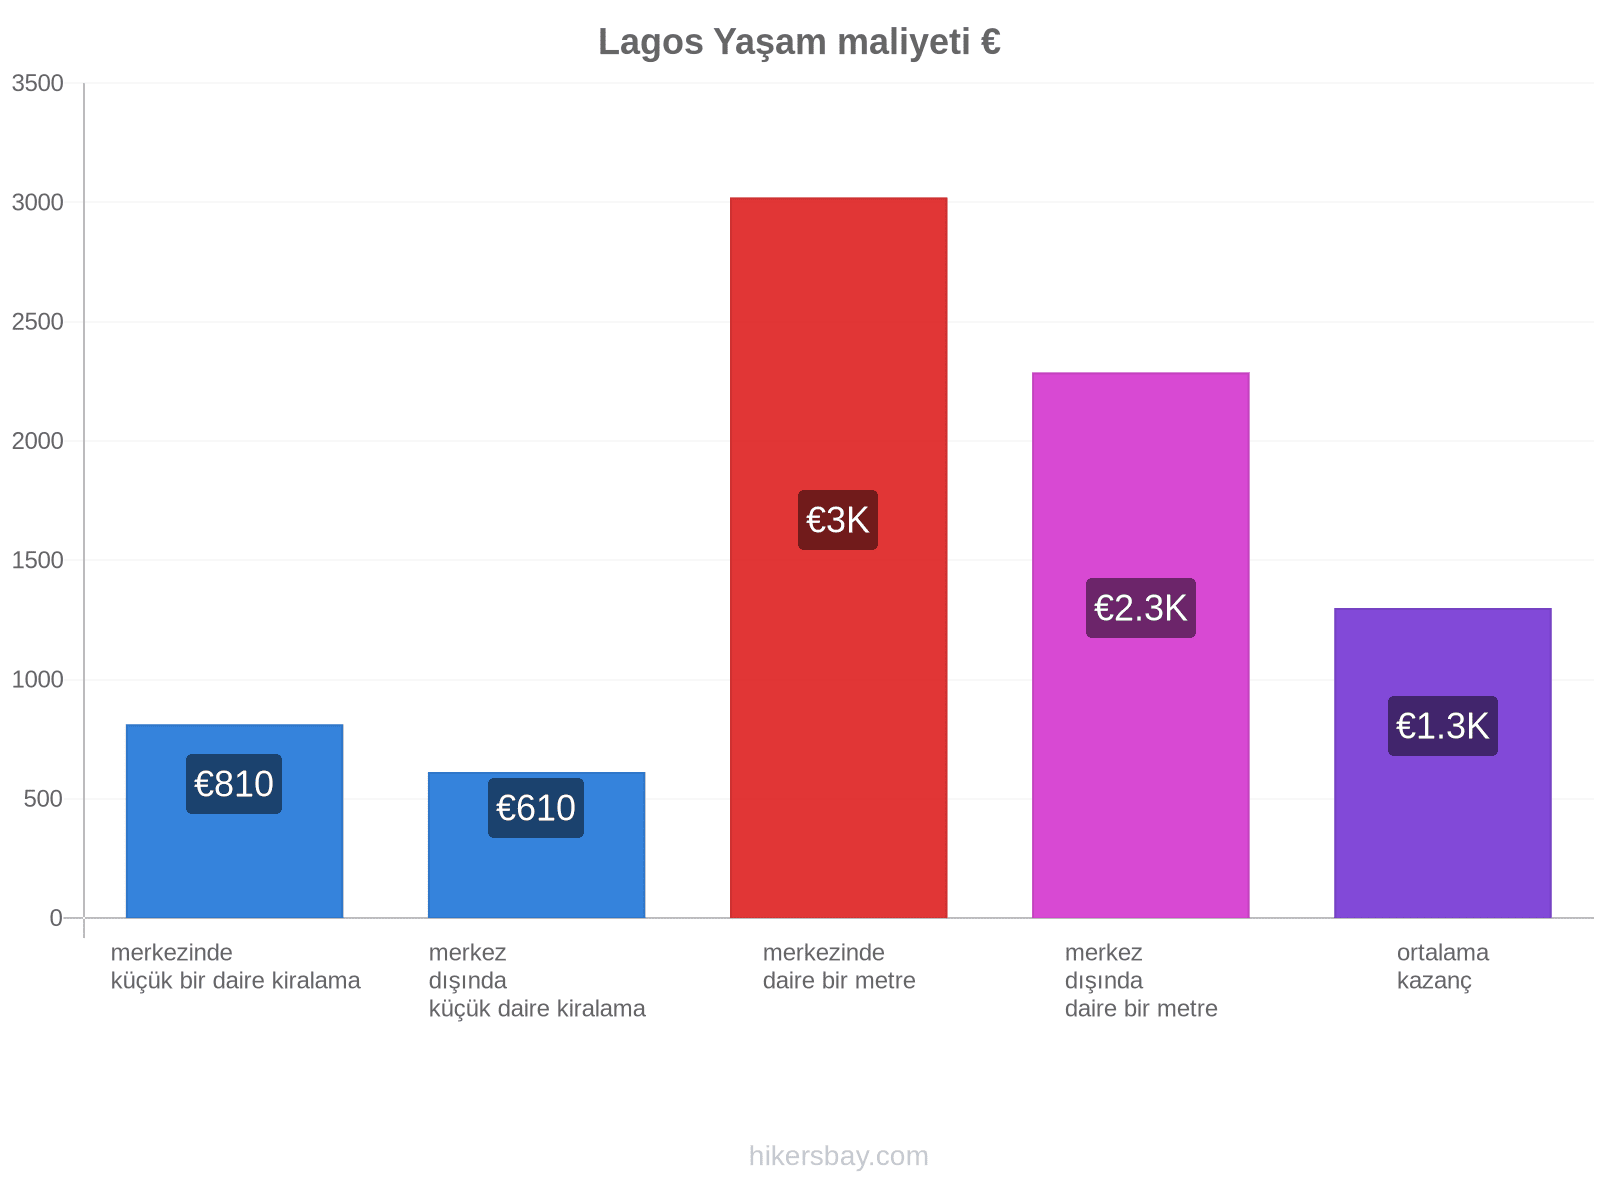 Lagos yaşam maliyeti hikersbay.com